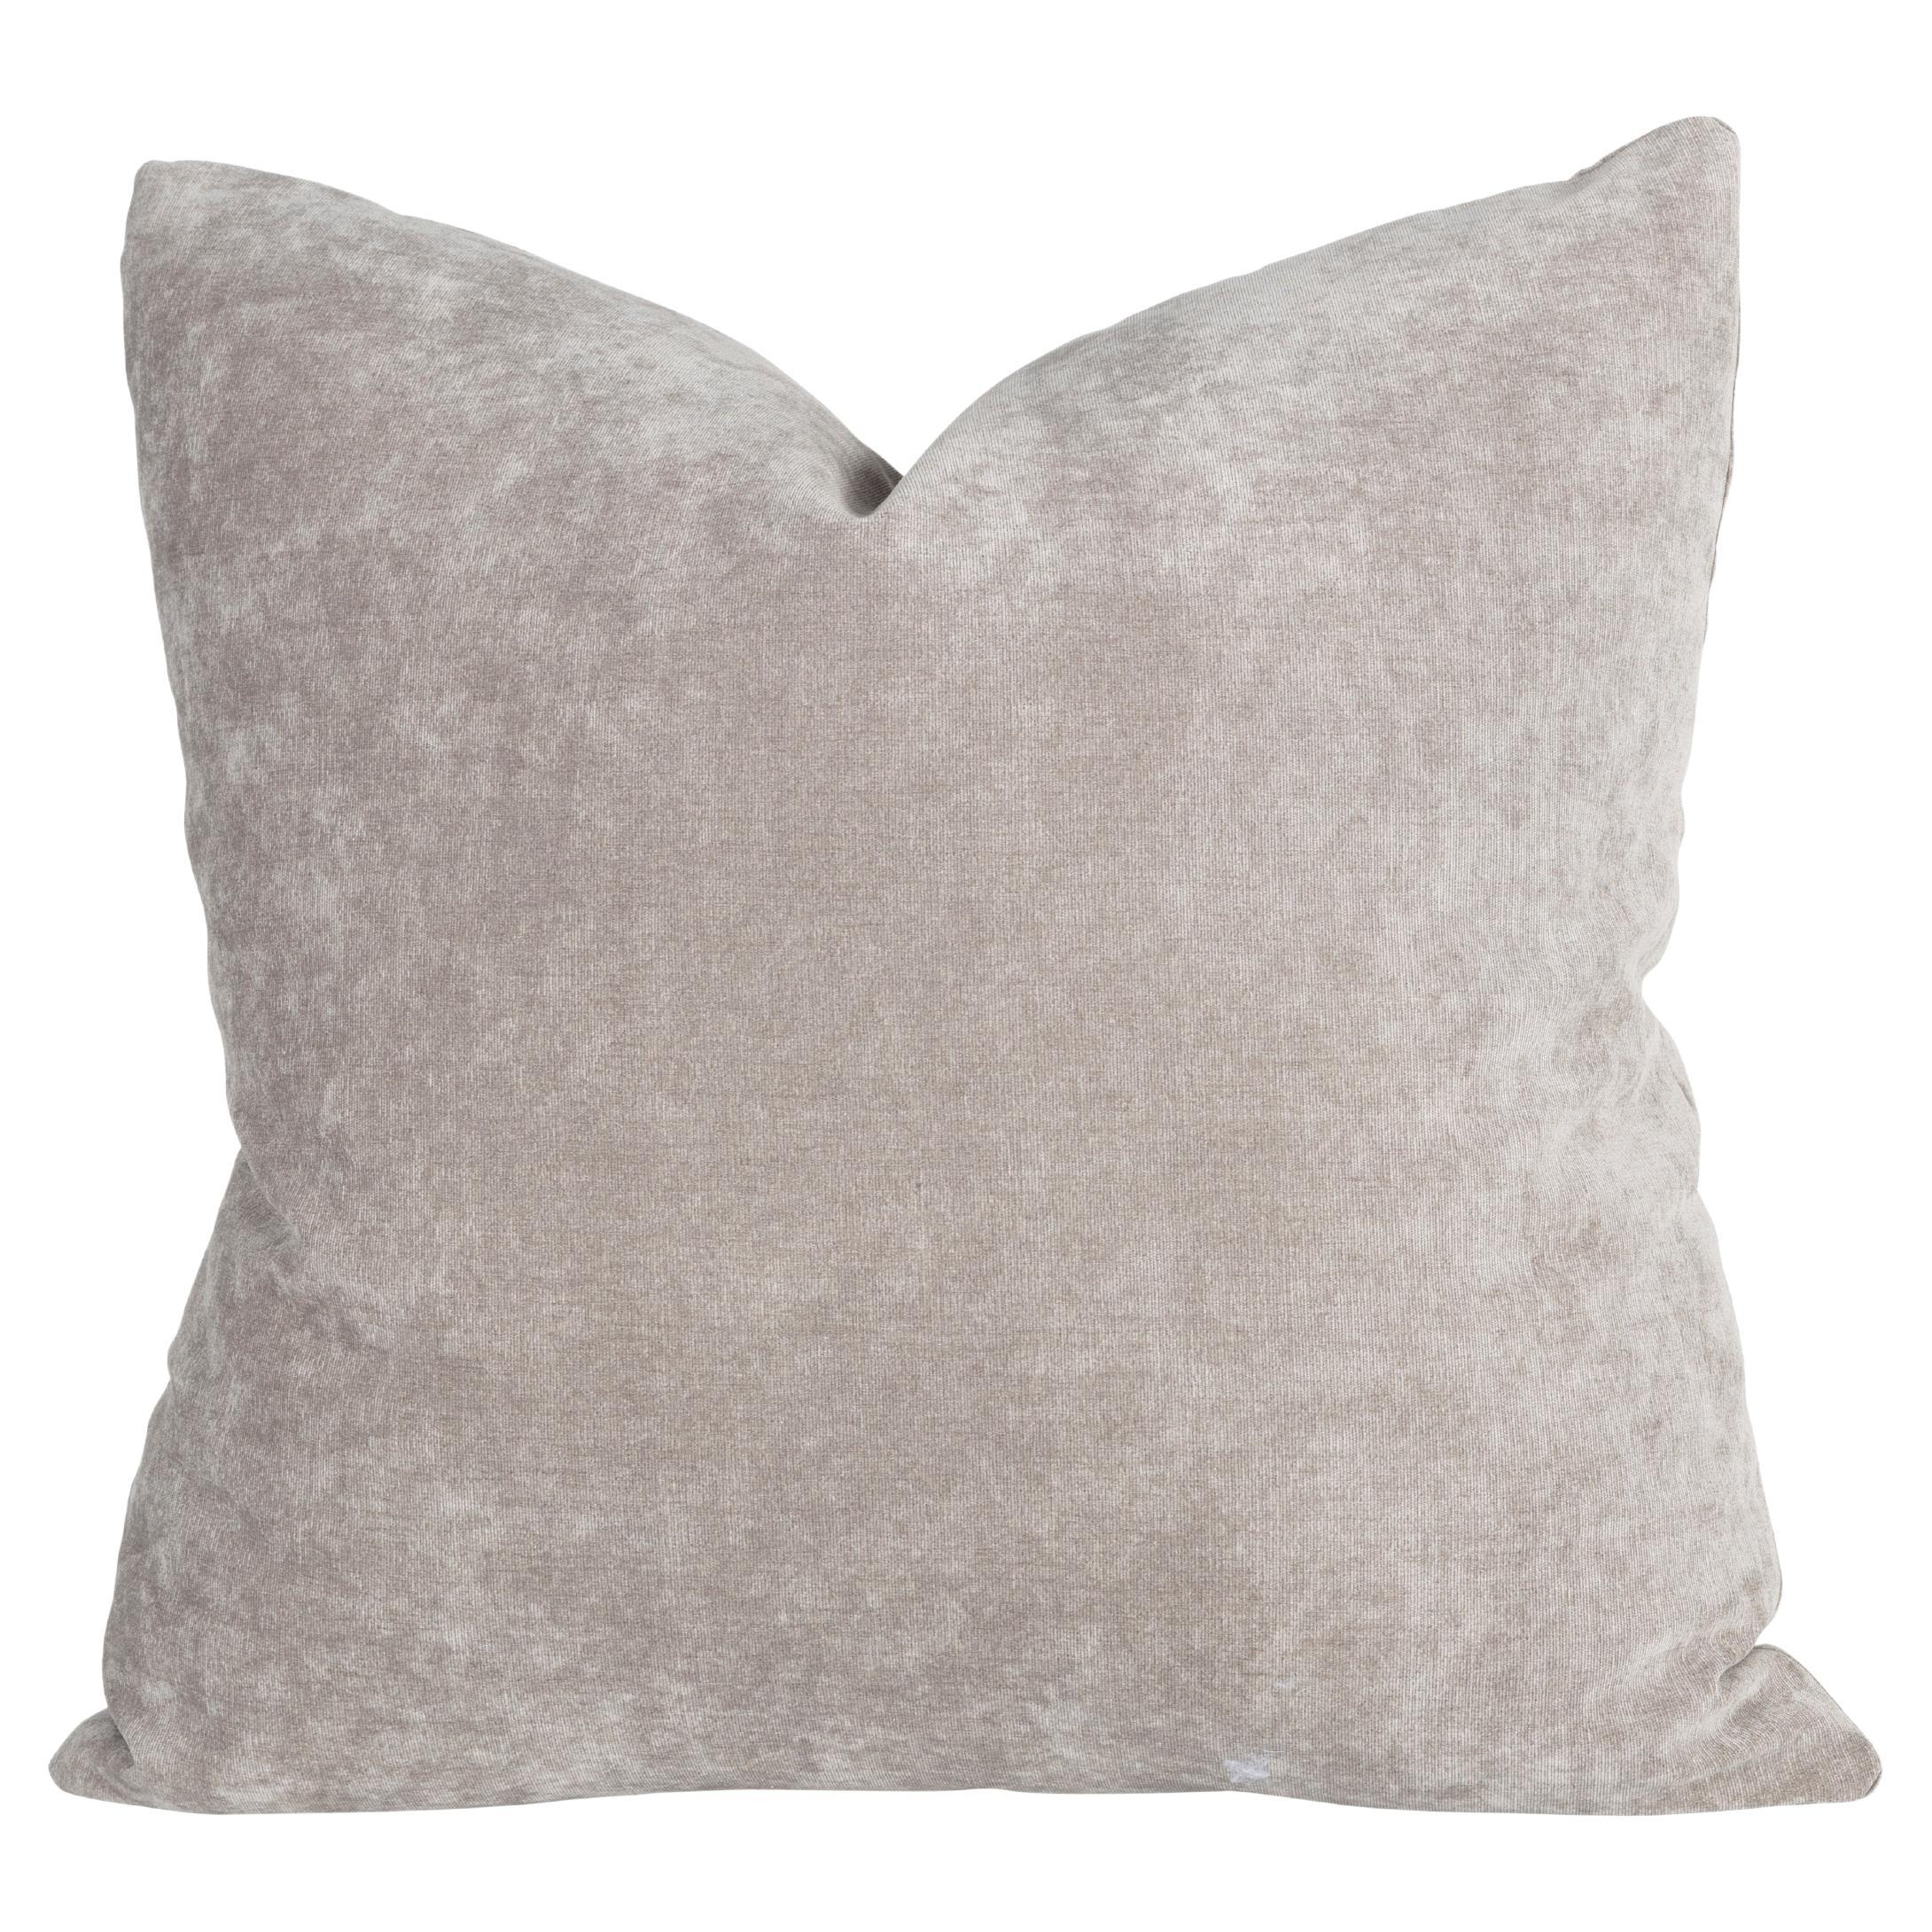 Frameworks by Brendan Bass Pillow in Grey Mushroom Velvet Vintage Fabric For Sale